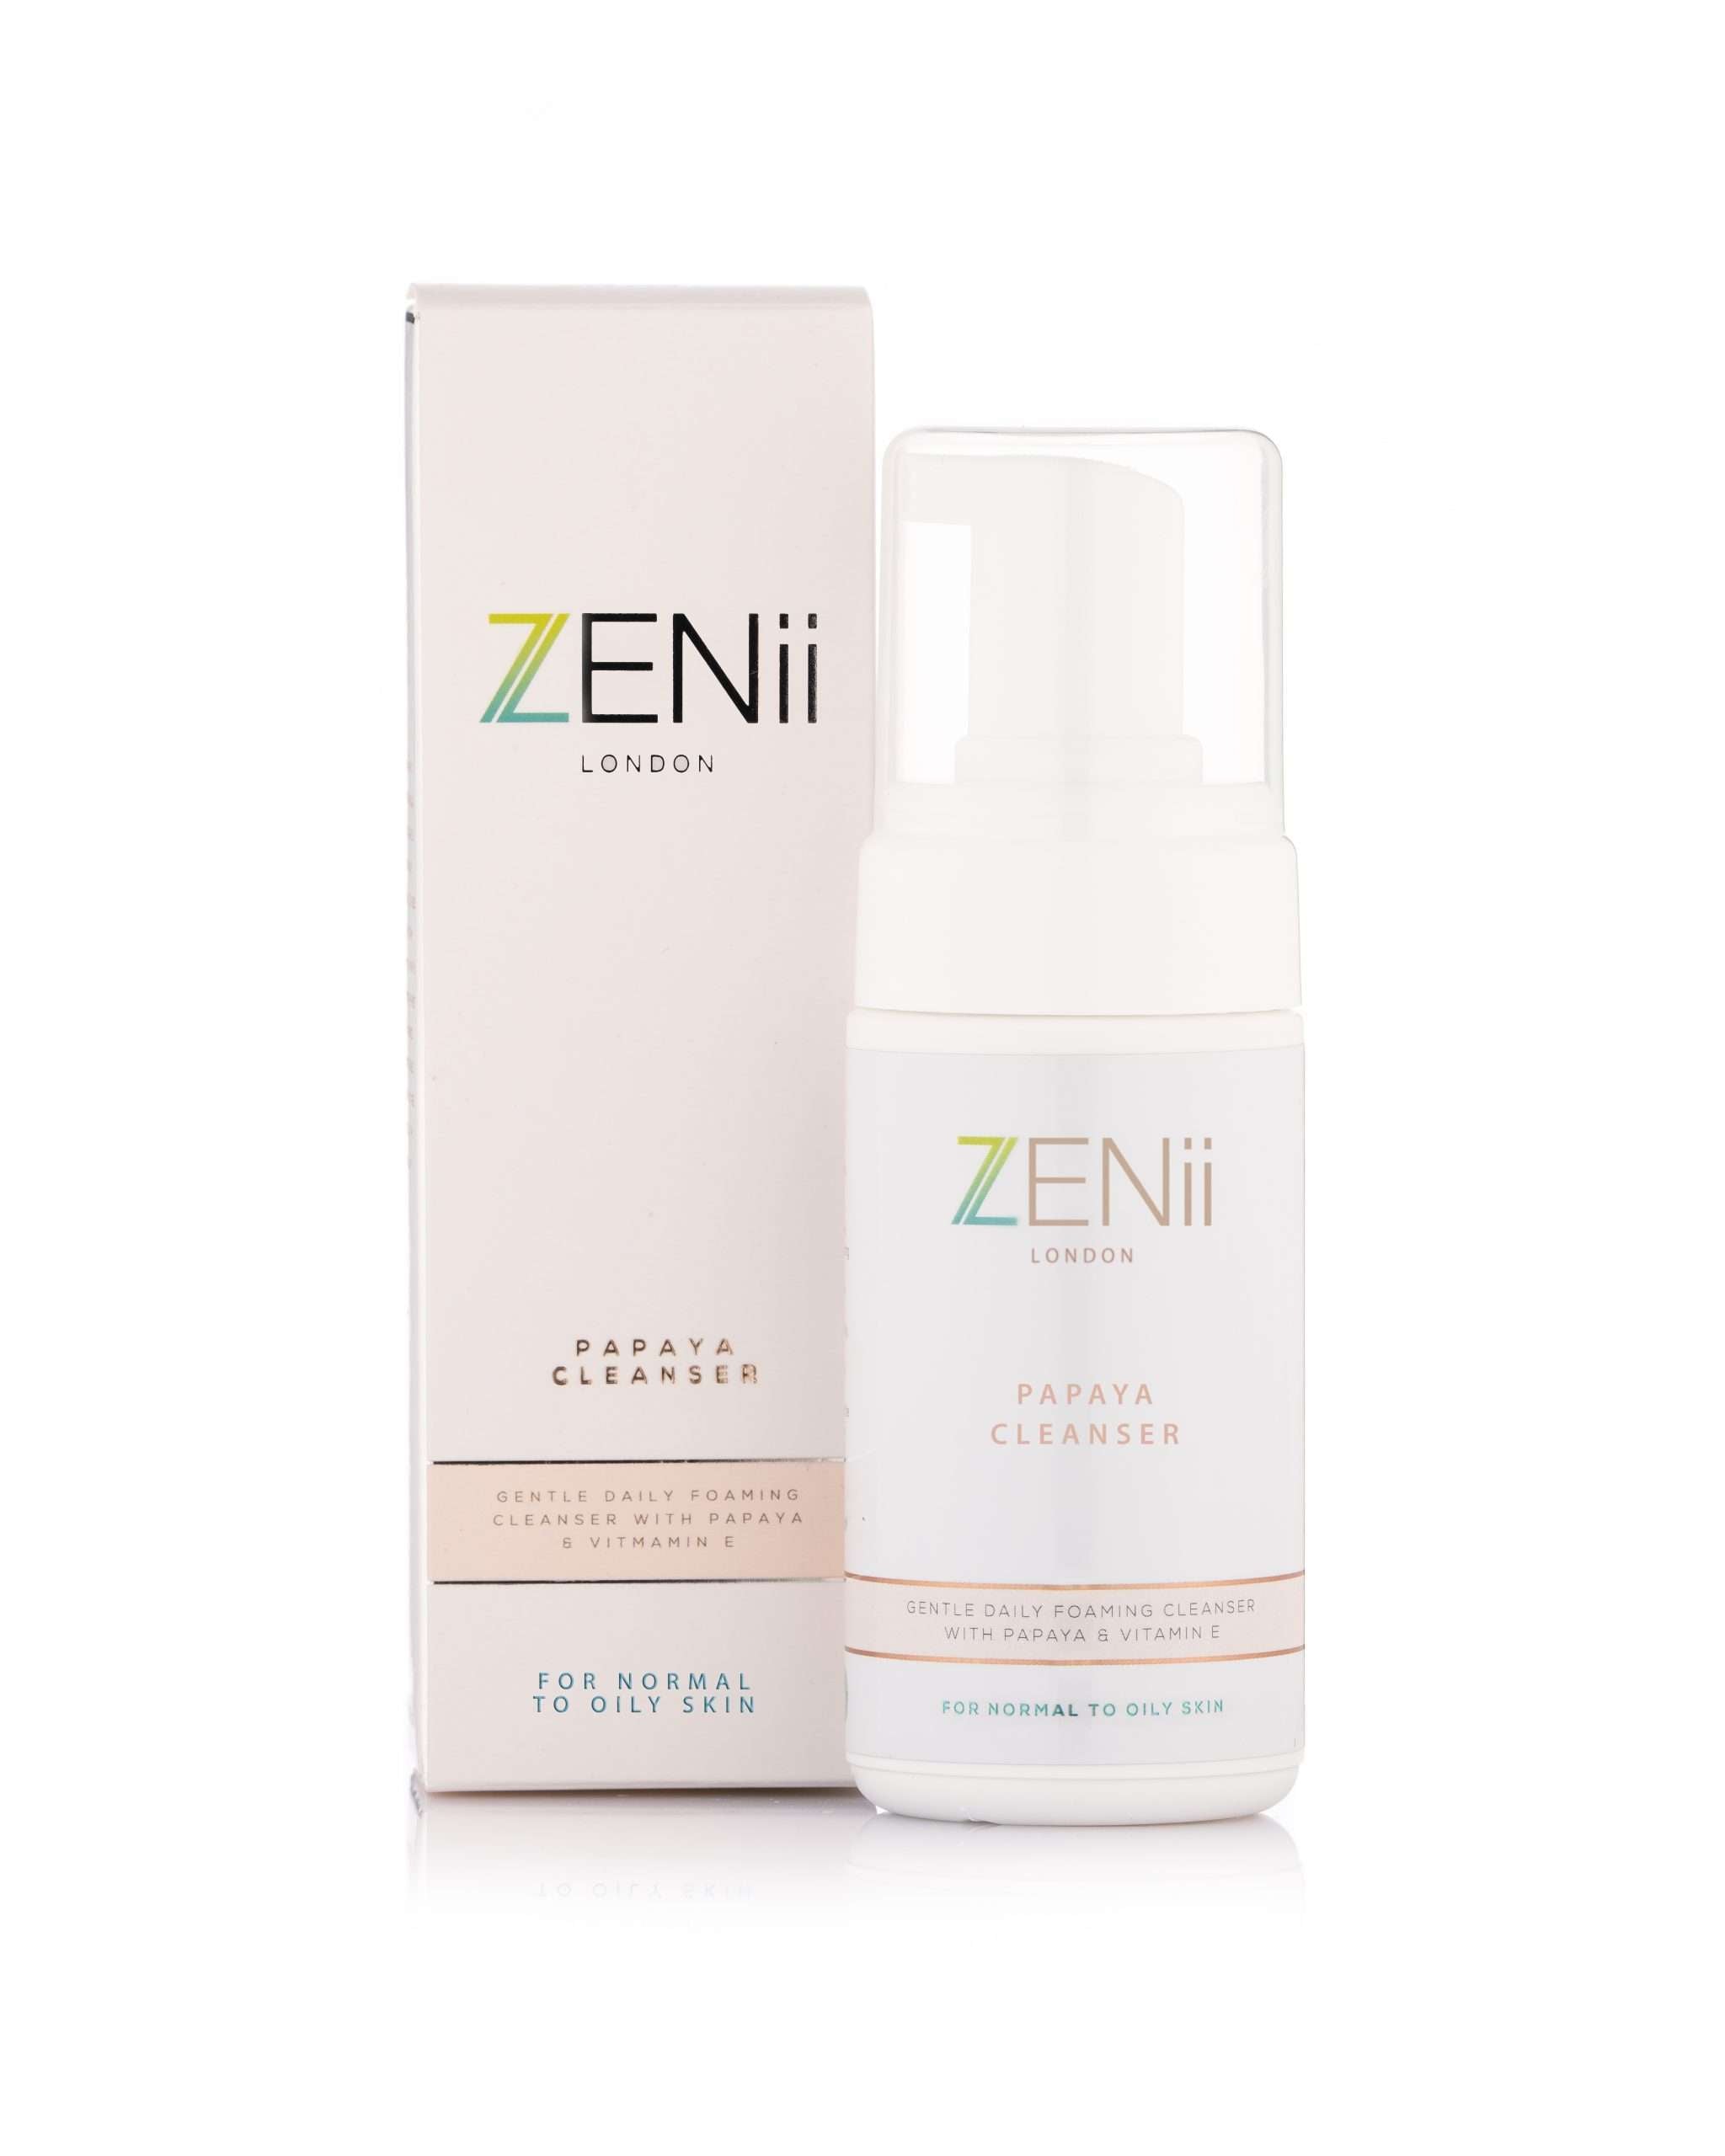 ZENII-Papaya Cleanser & Bottle